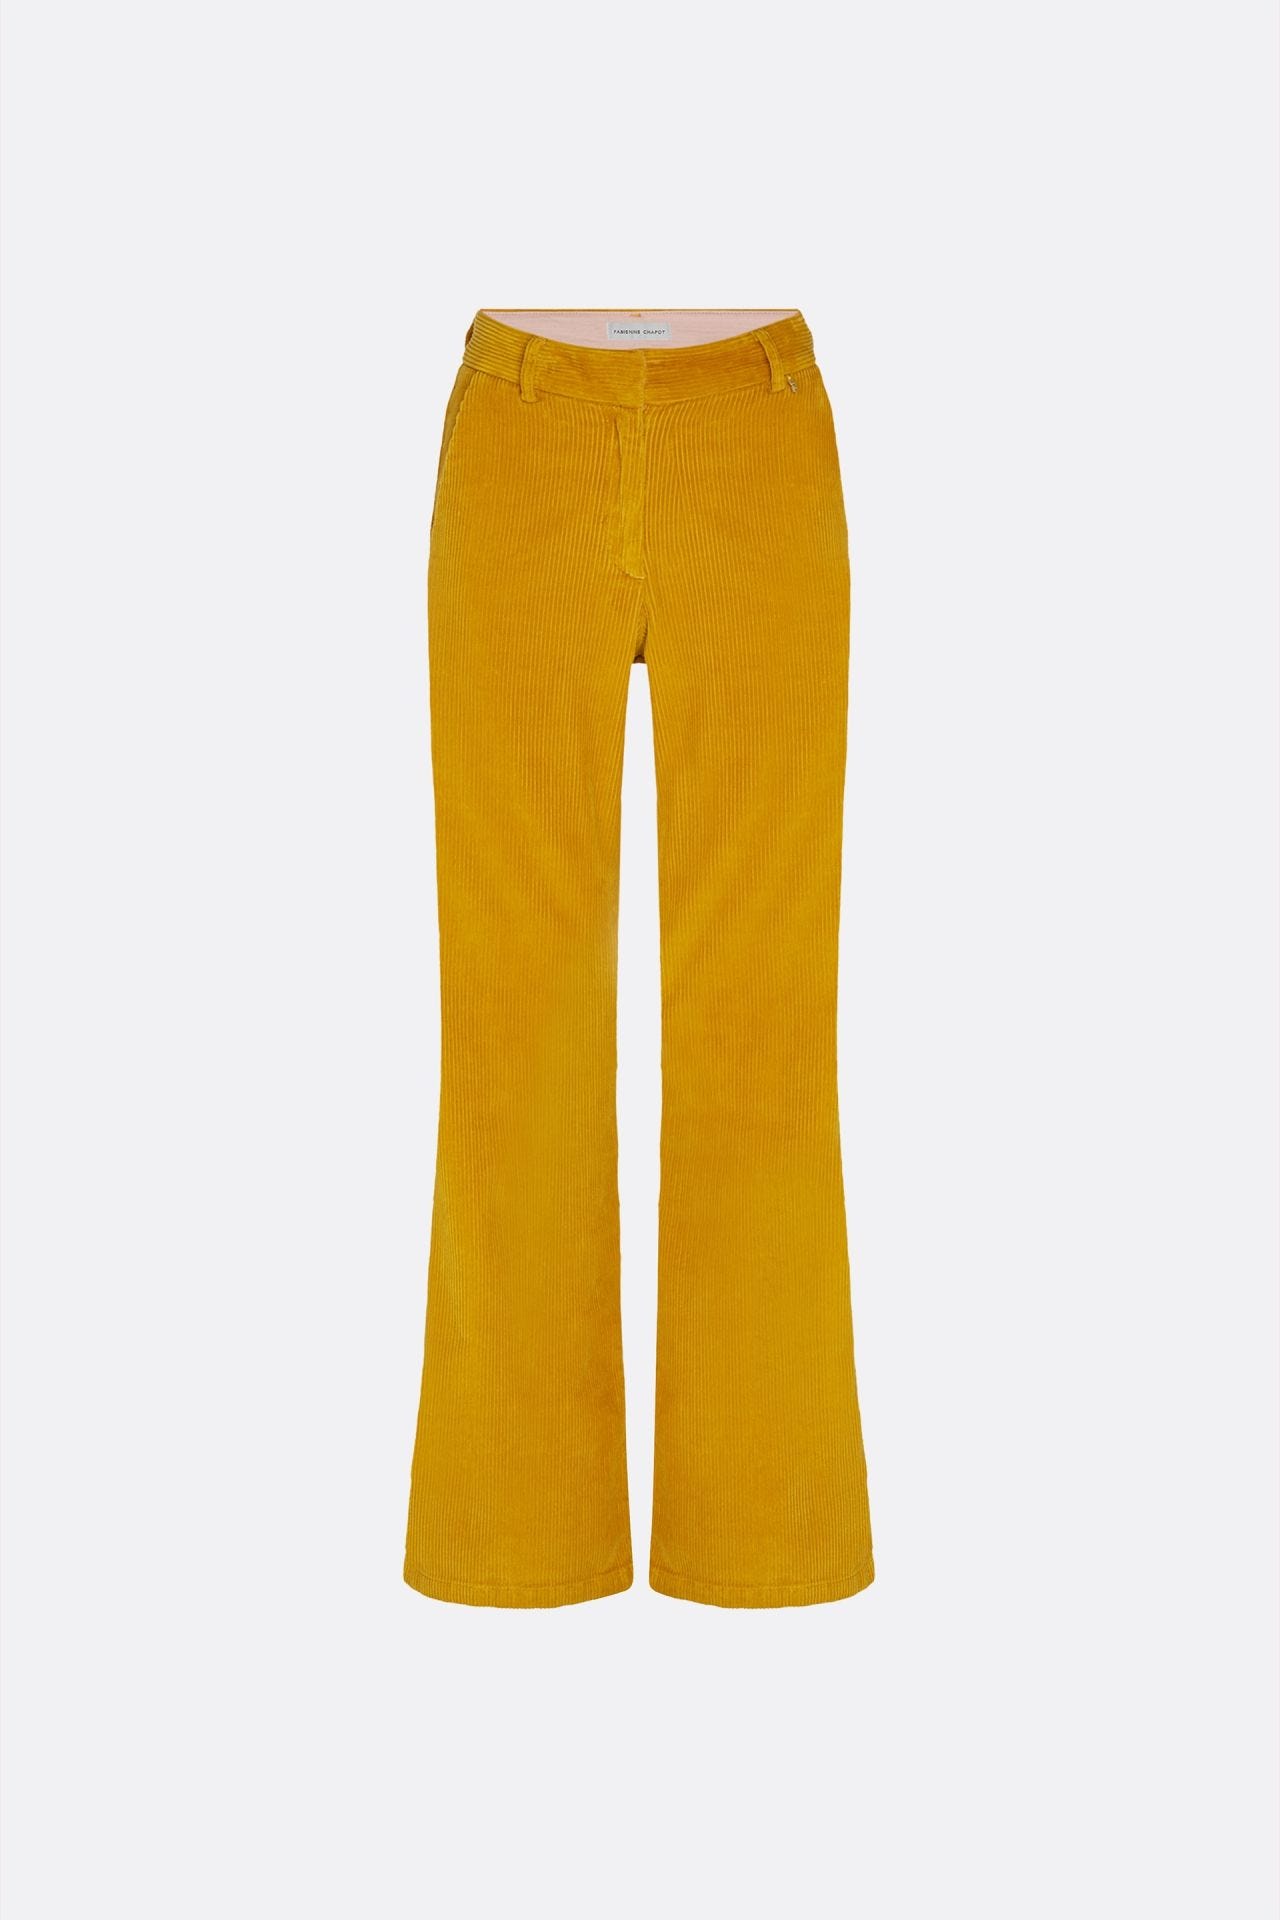 Gele dames broek pantalon - Fabienne Chapot - Elodie trousers - saffron